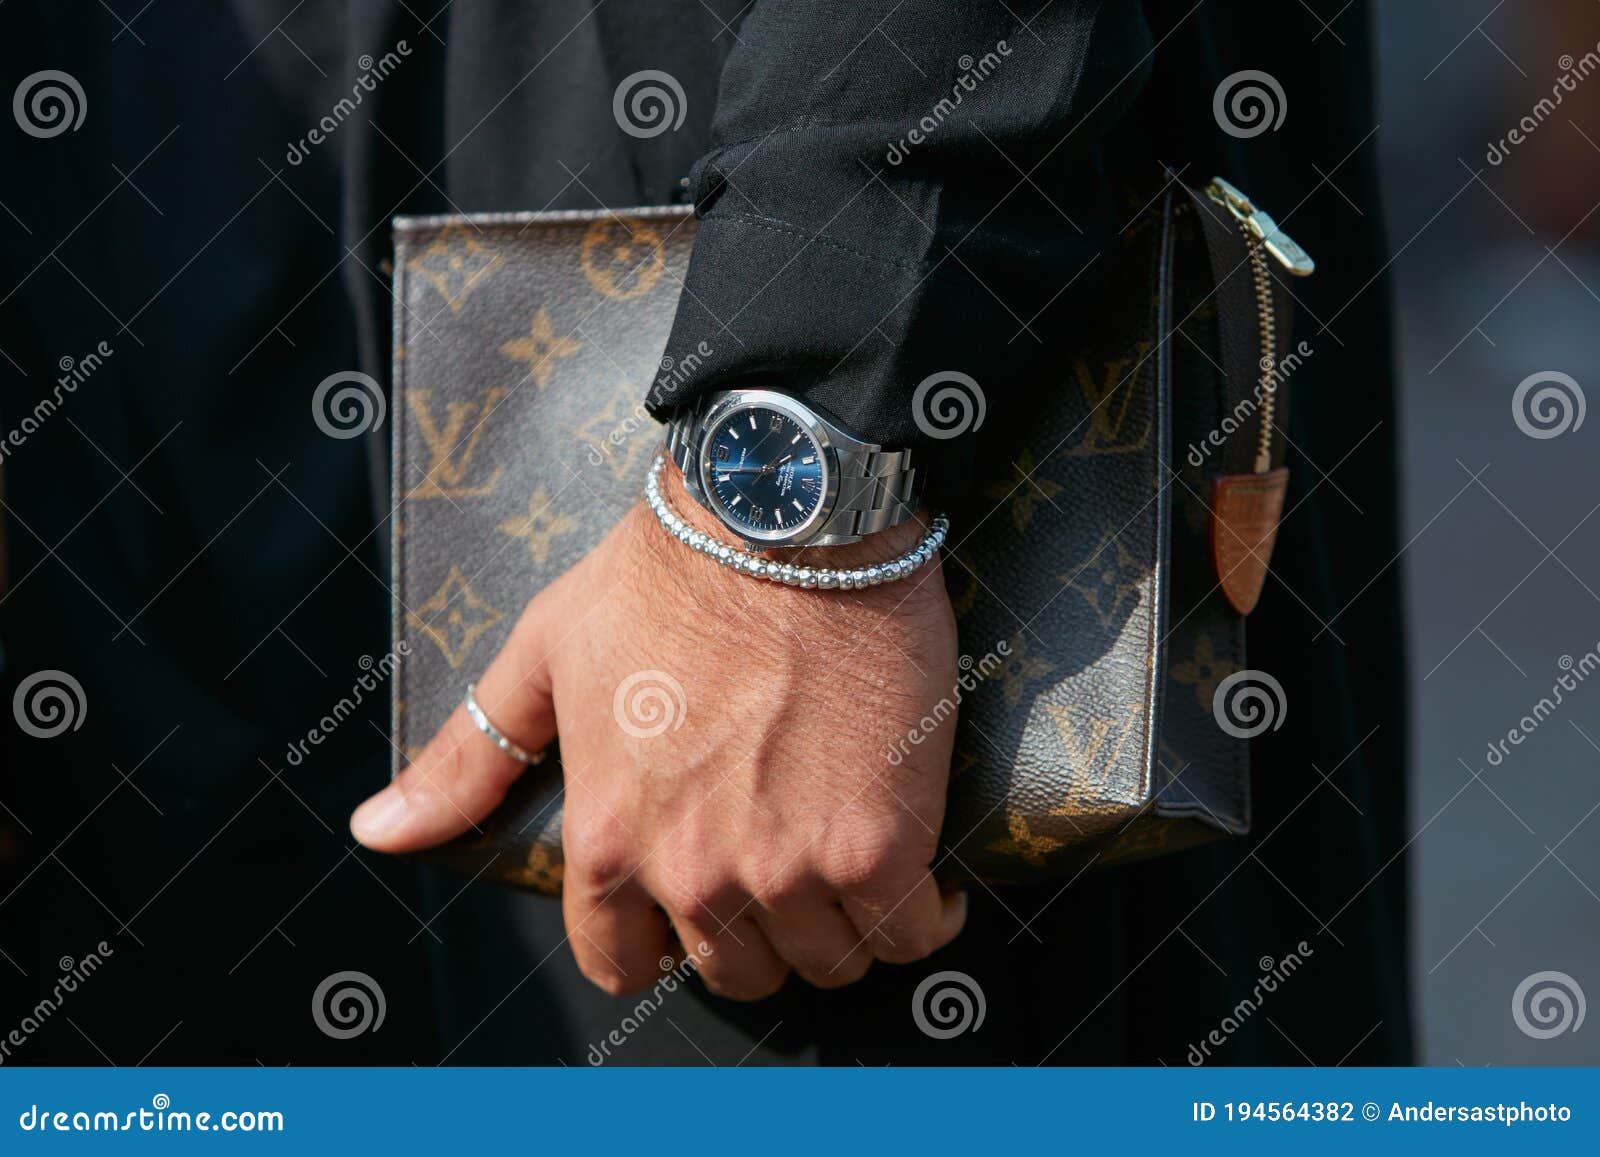 Stil mit Louis Vuitton und Rolex  Stylish watches men, Mens accessories  vintage, Louis vuitton